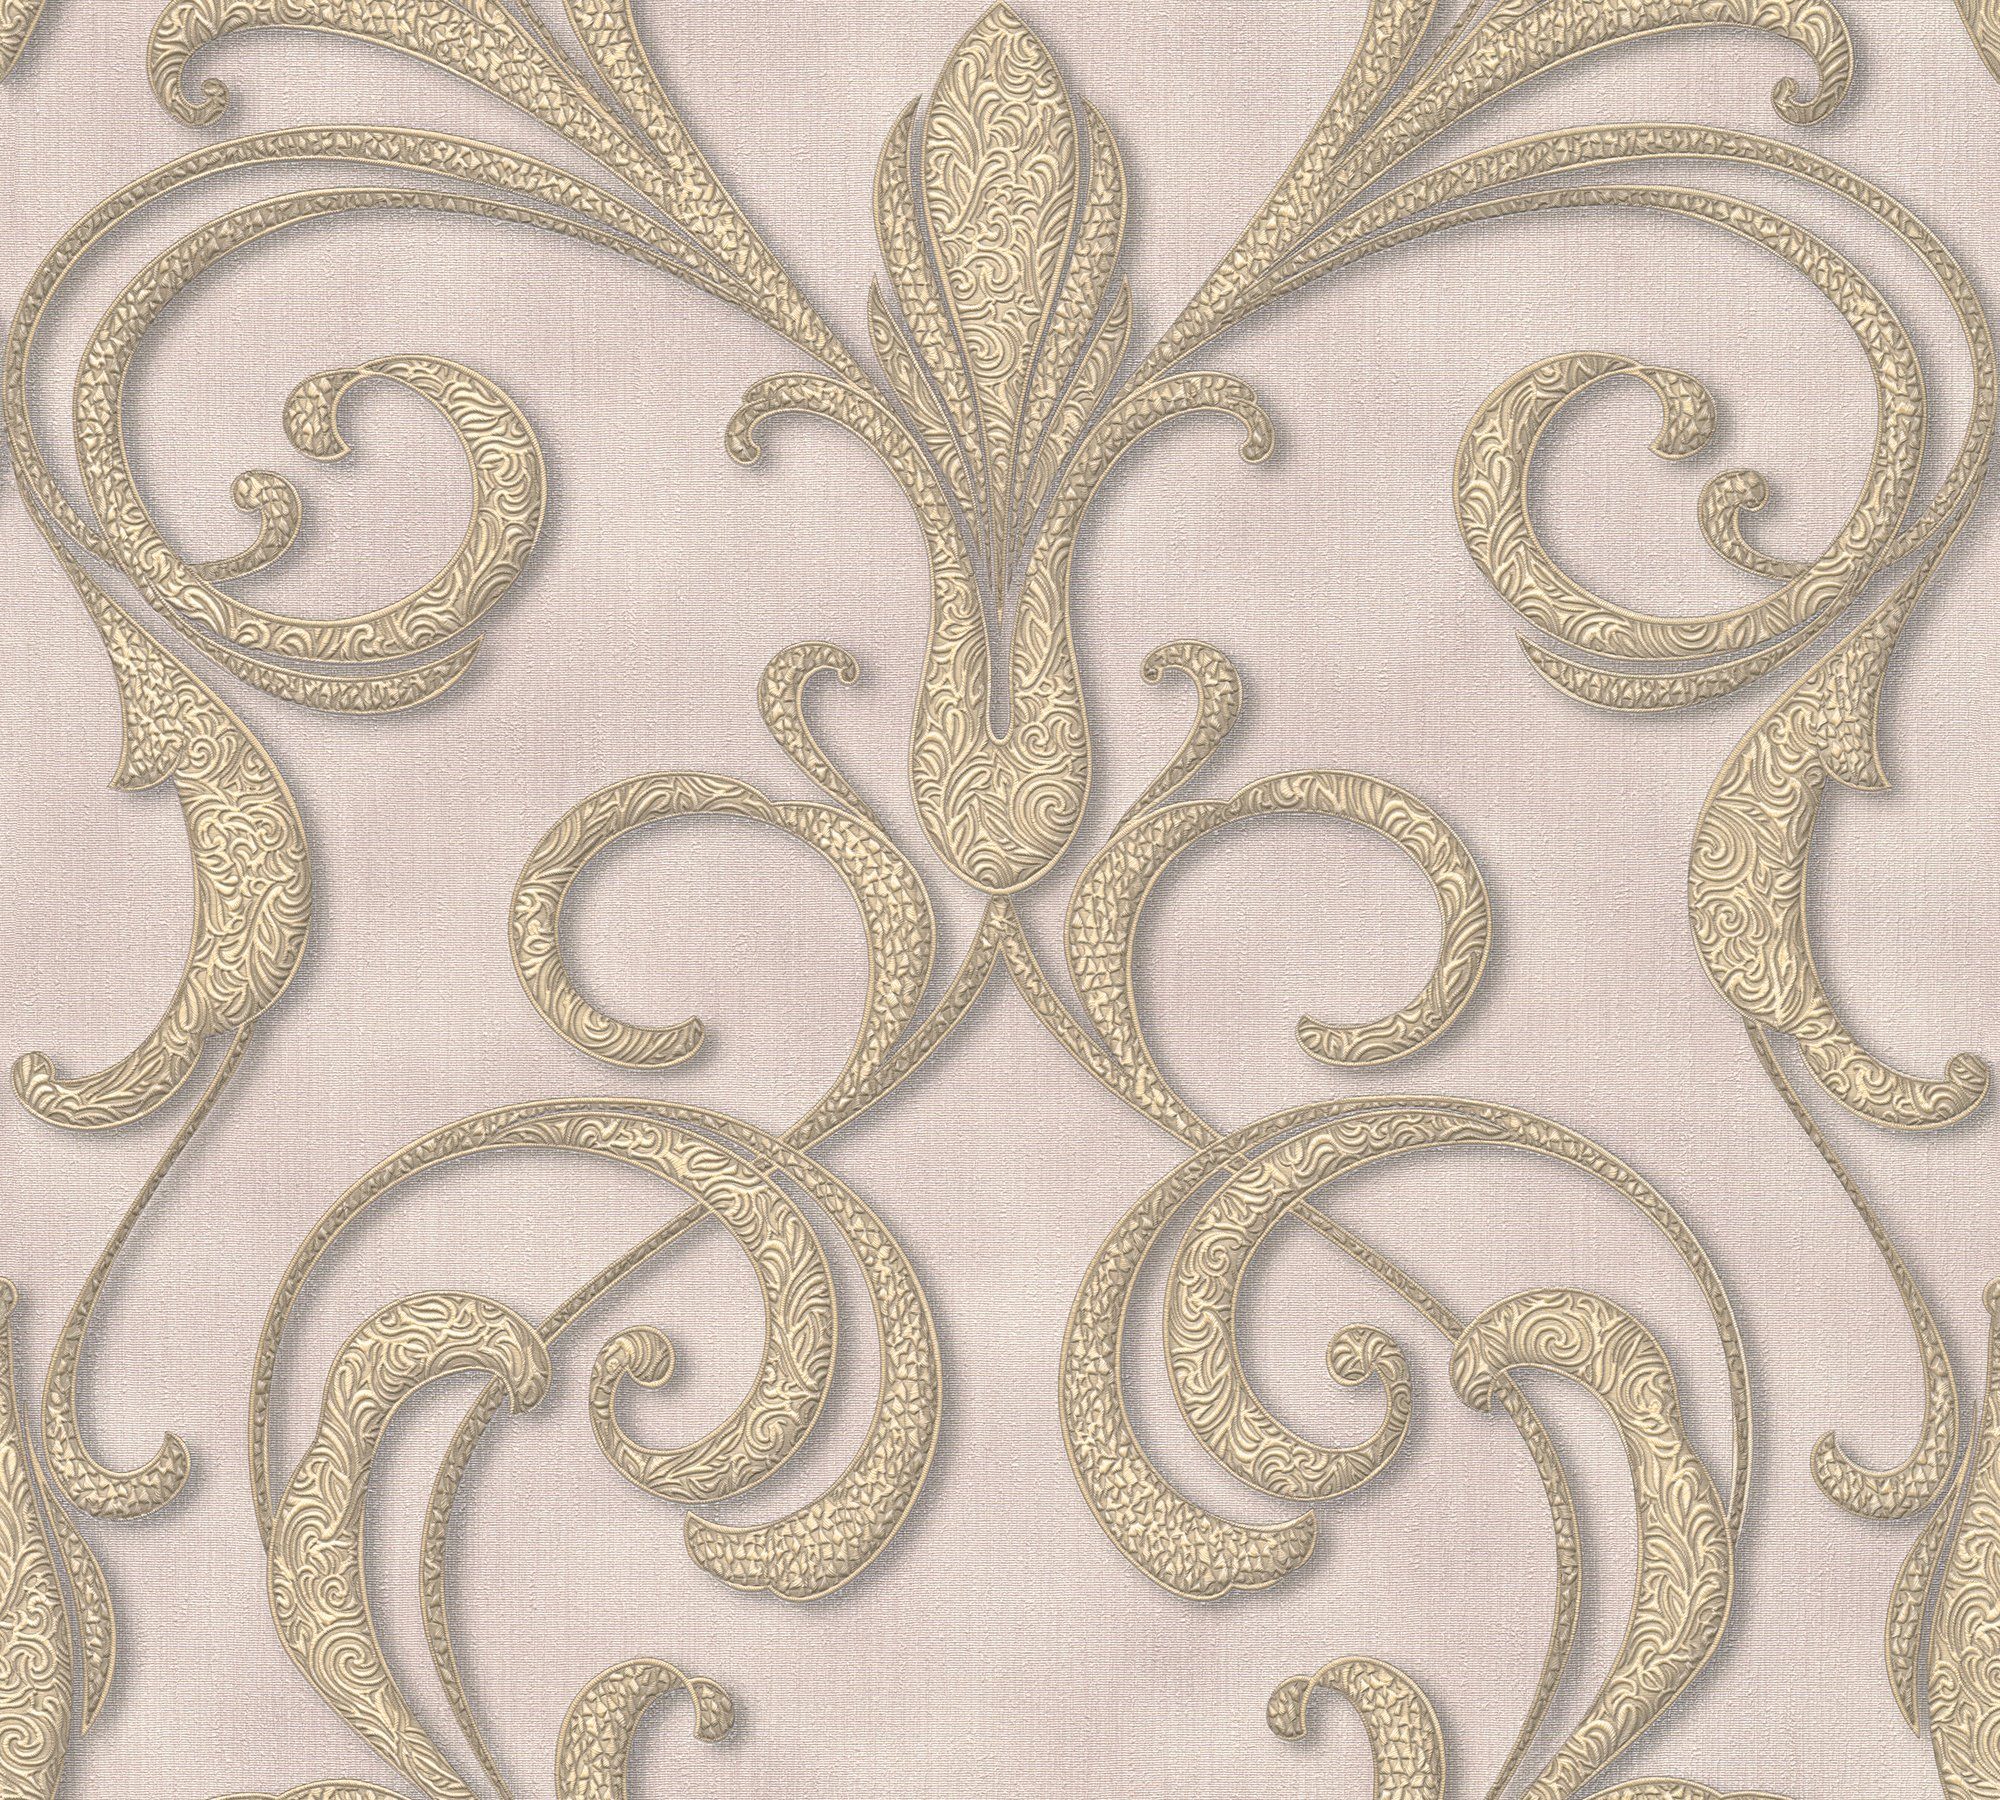 Vliestapete Paper Création A.S. gold/violett/braun Tapete Barock, Architects Ornament Barock Nobile,